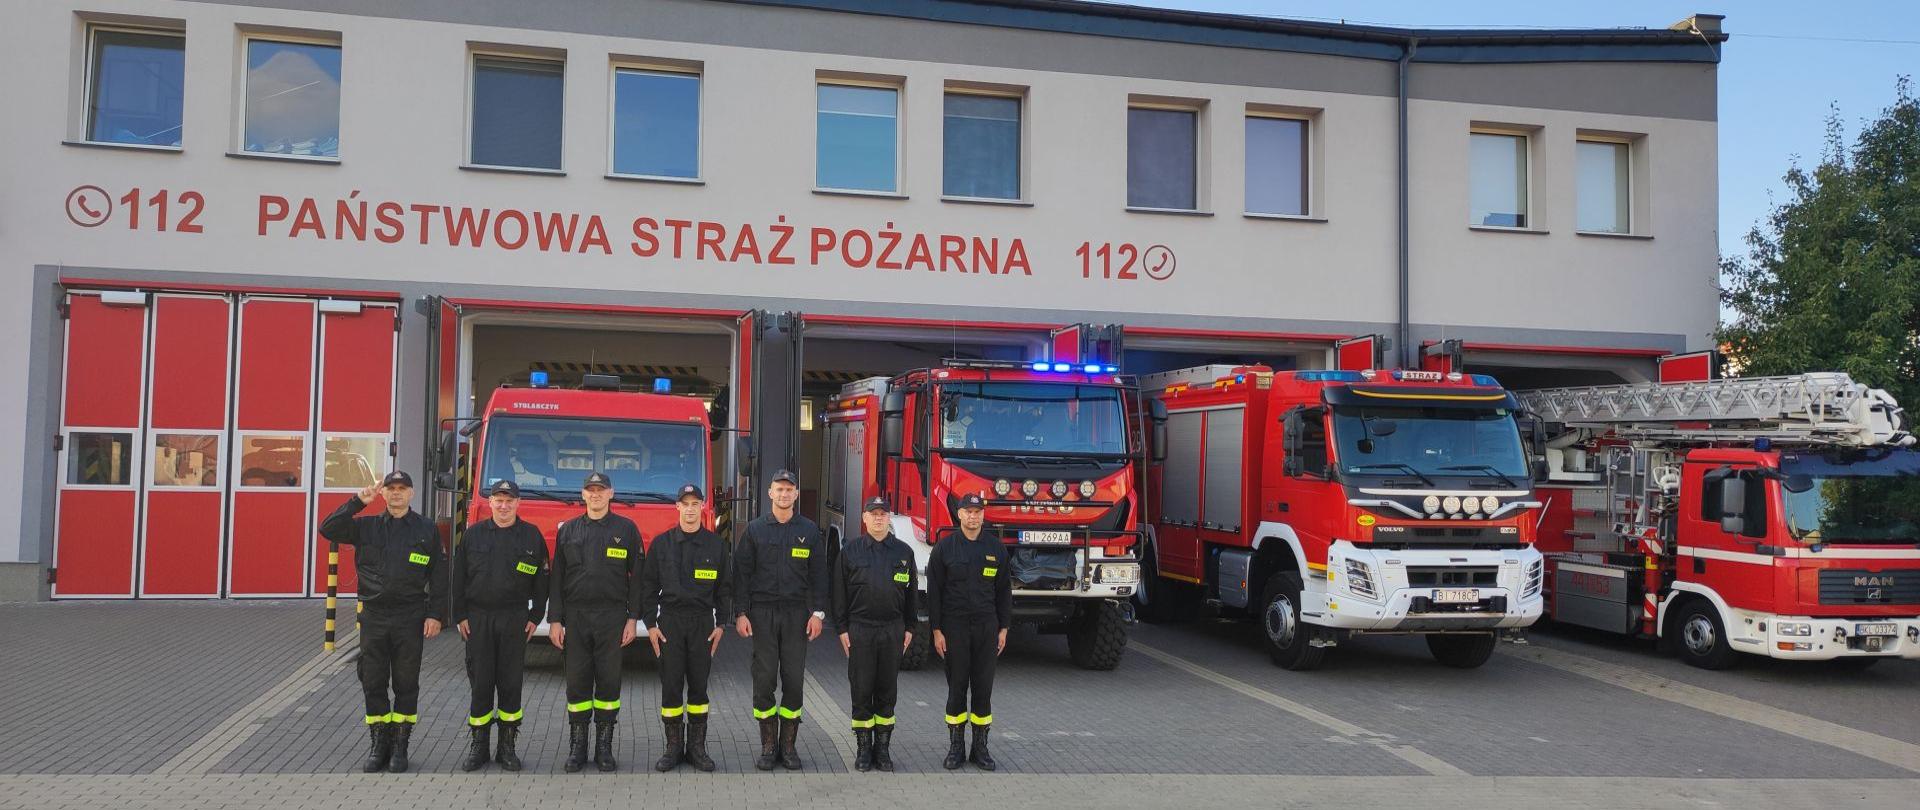 Na zdjęciu widać strażaków PSP stojących przed strażnicą, którzy oddają hołdu tragicznie zmarłemu strażakowi OSP